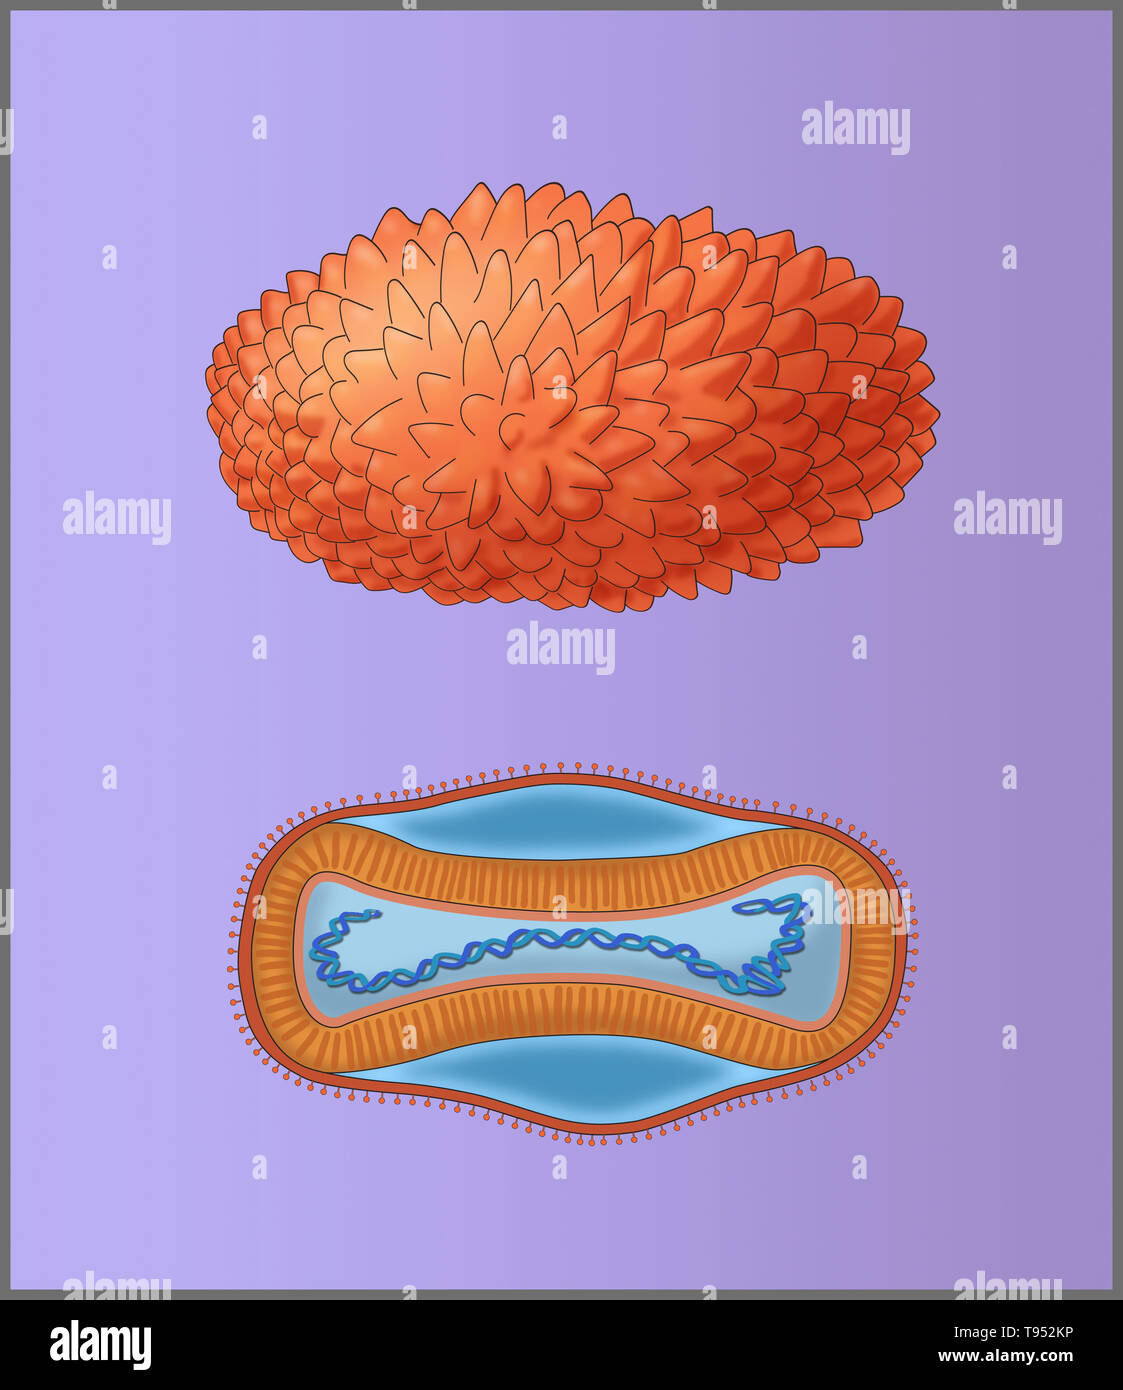 Illustrazione di virus del vaiolo, che mostra una vista esterna (superiore) e la struttura interna (fondo). Foto Stock